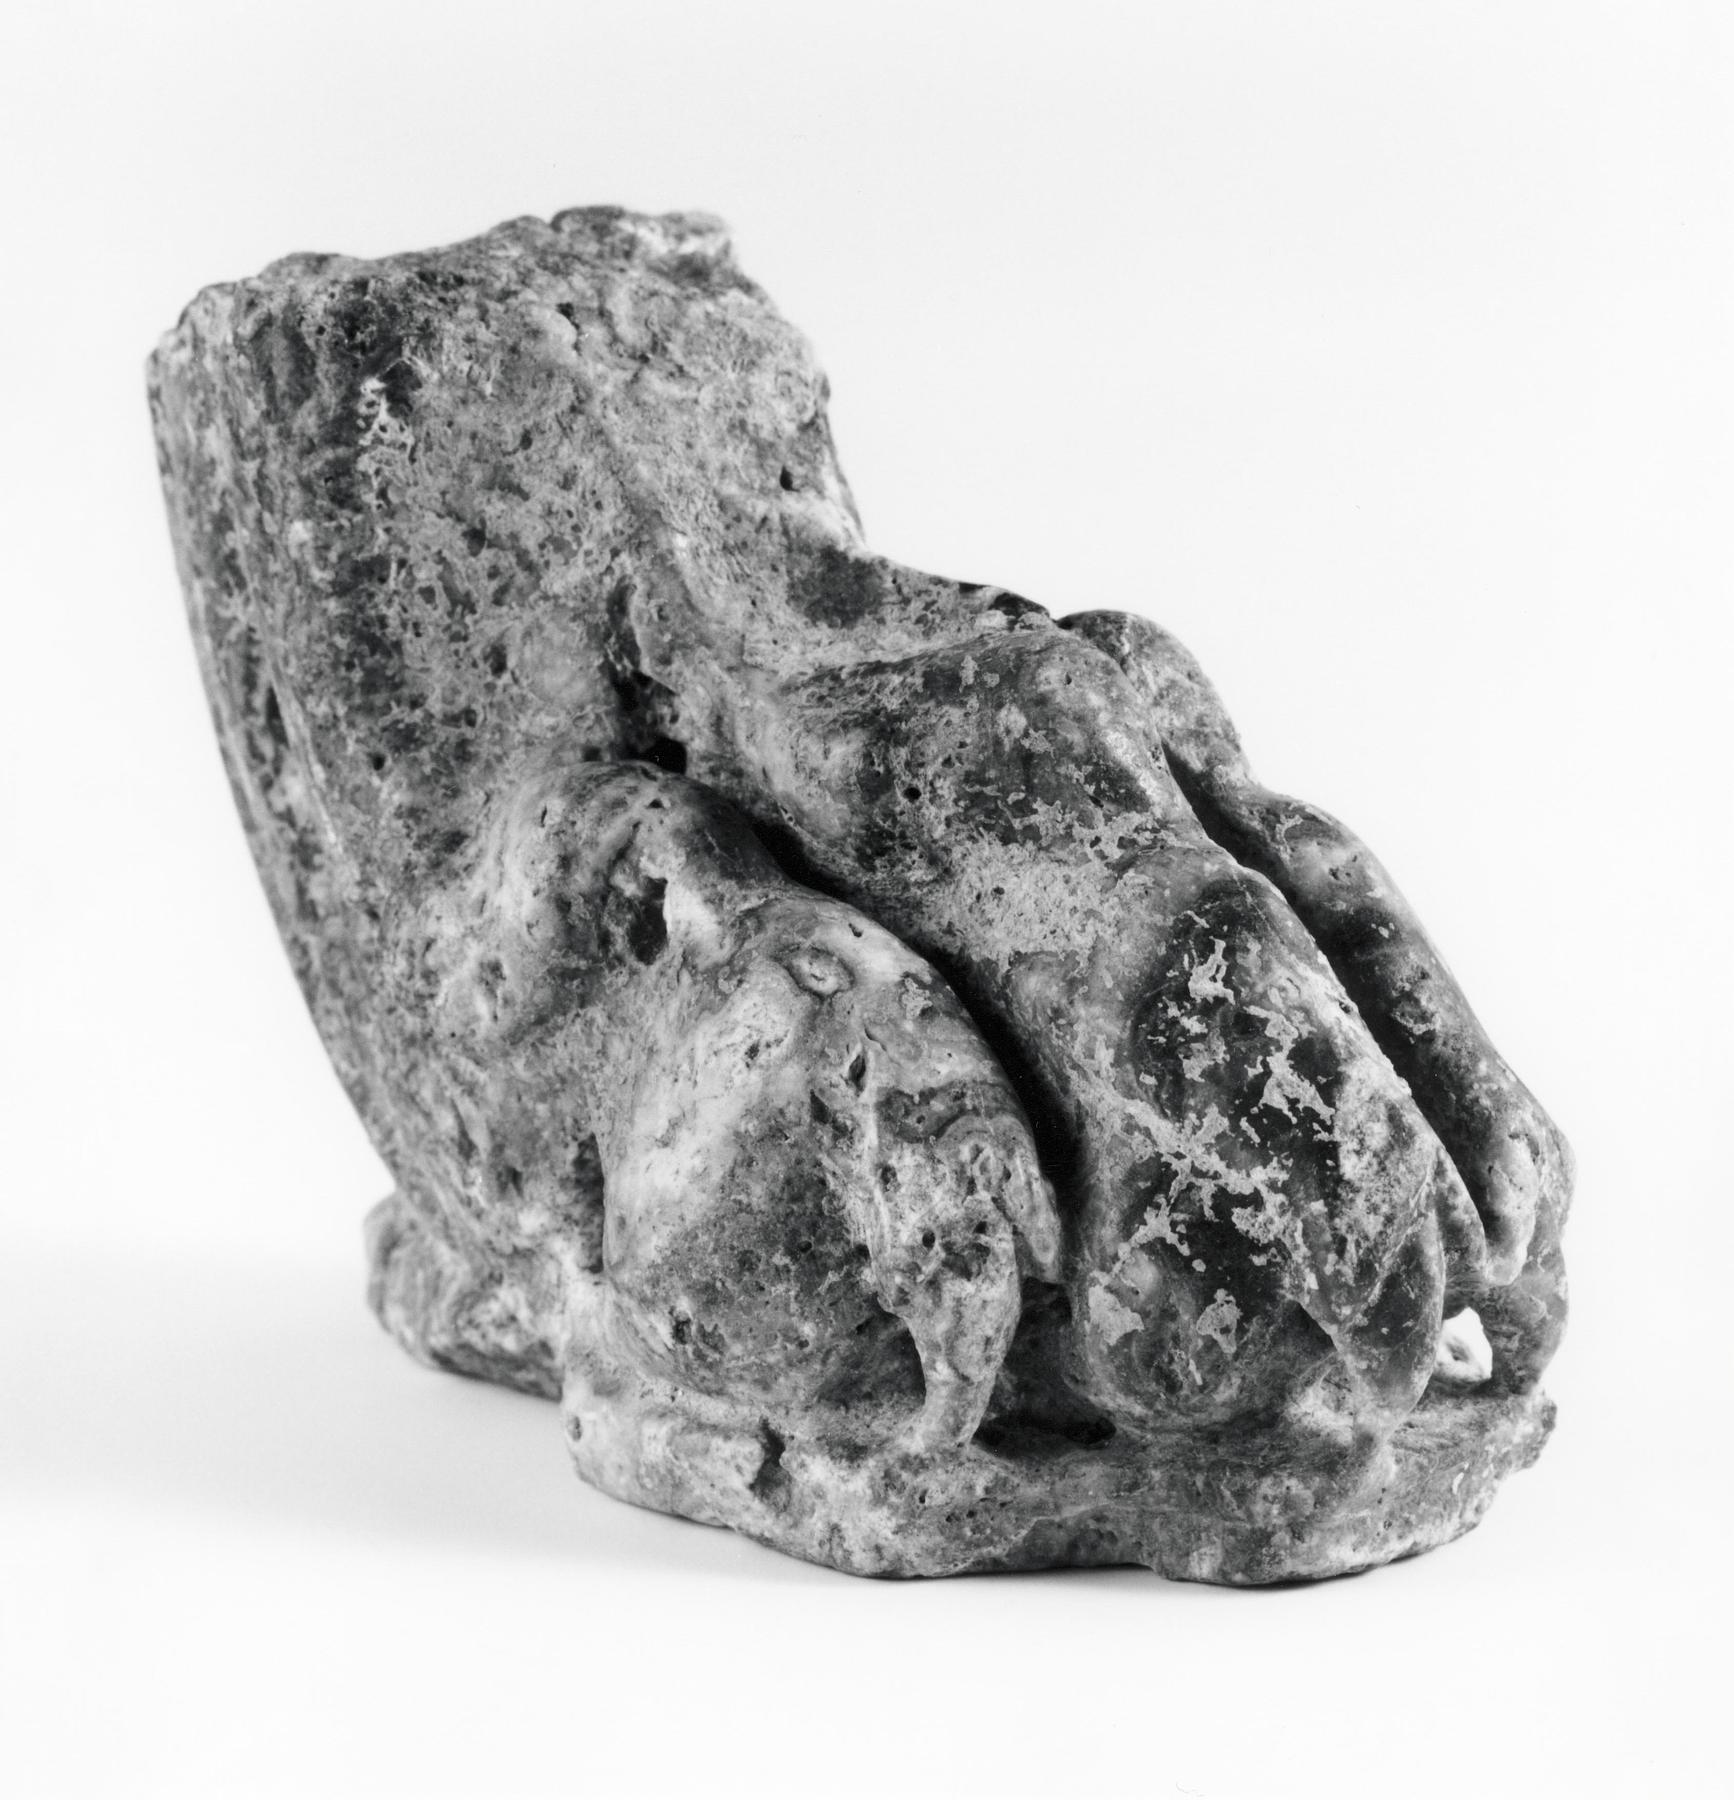 Table leg or lion sculpture, H1466